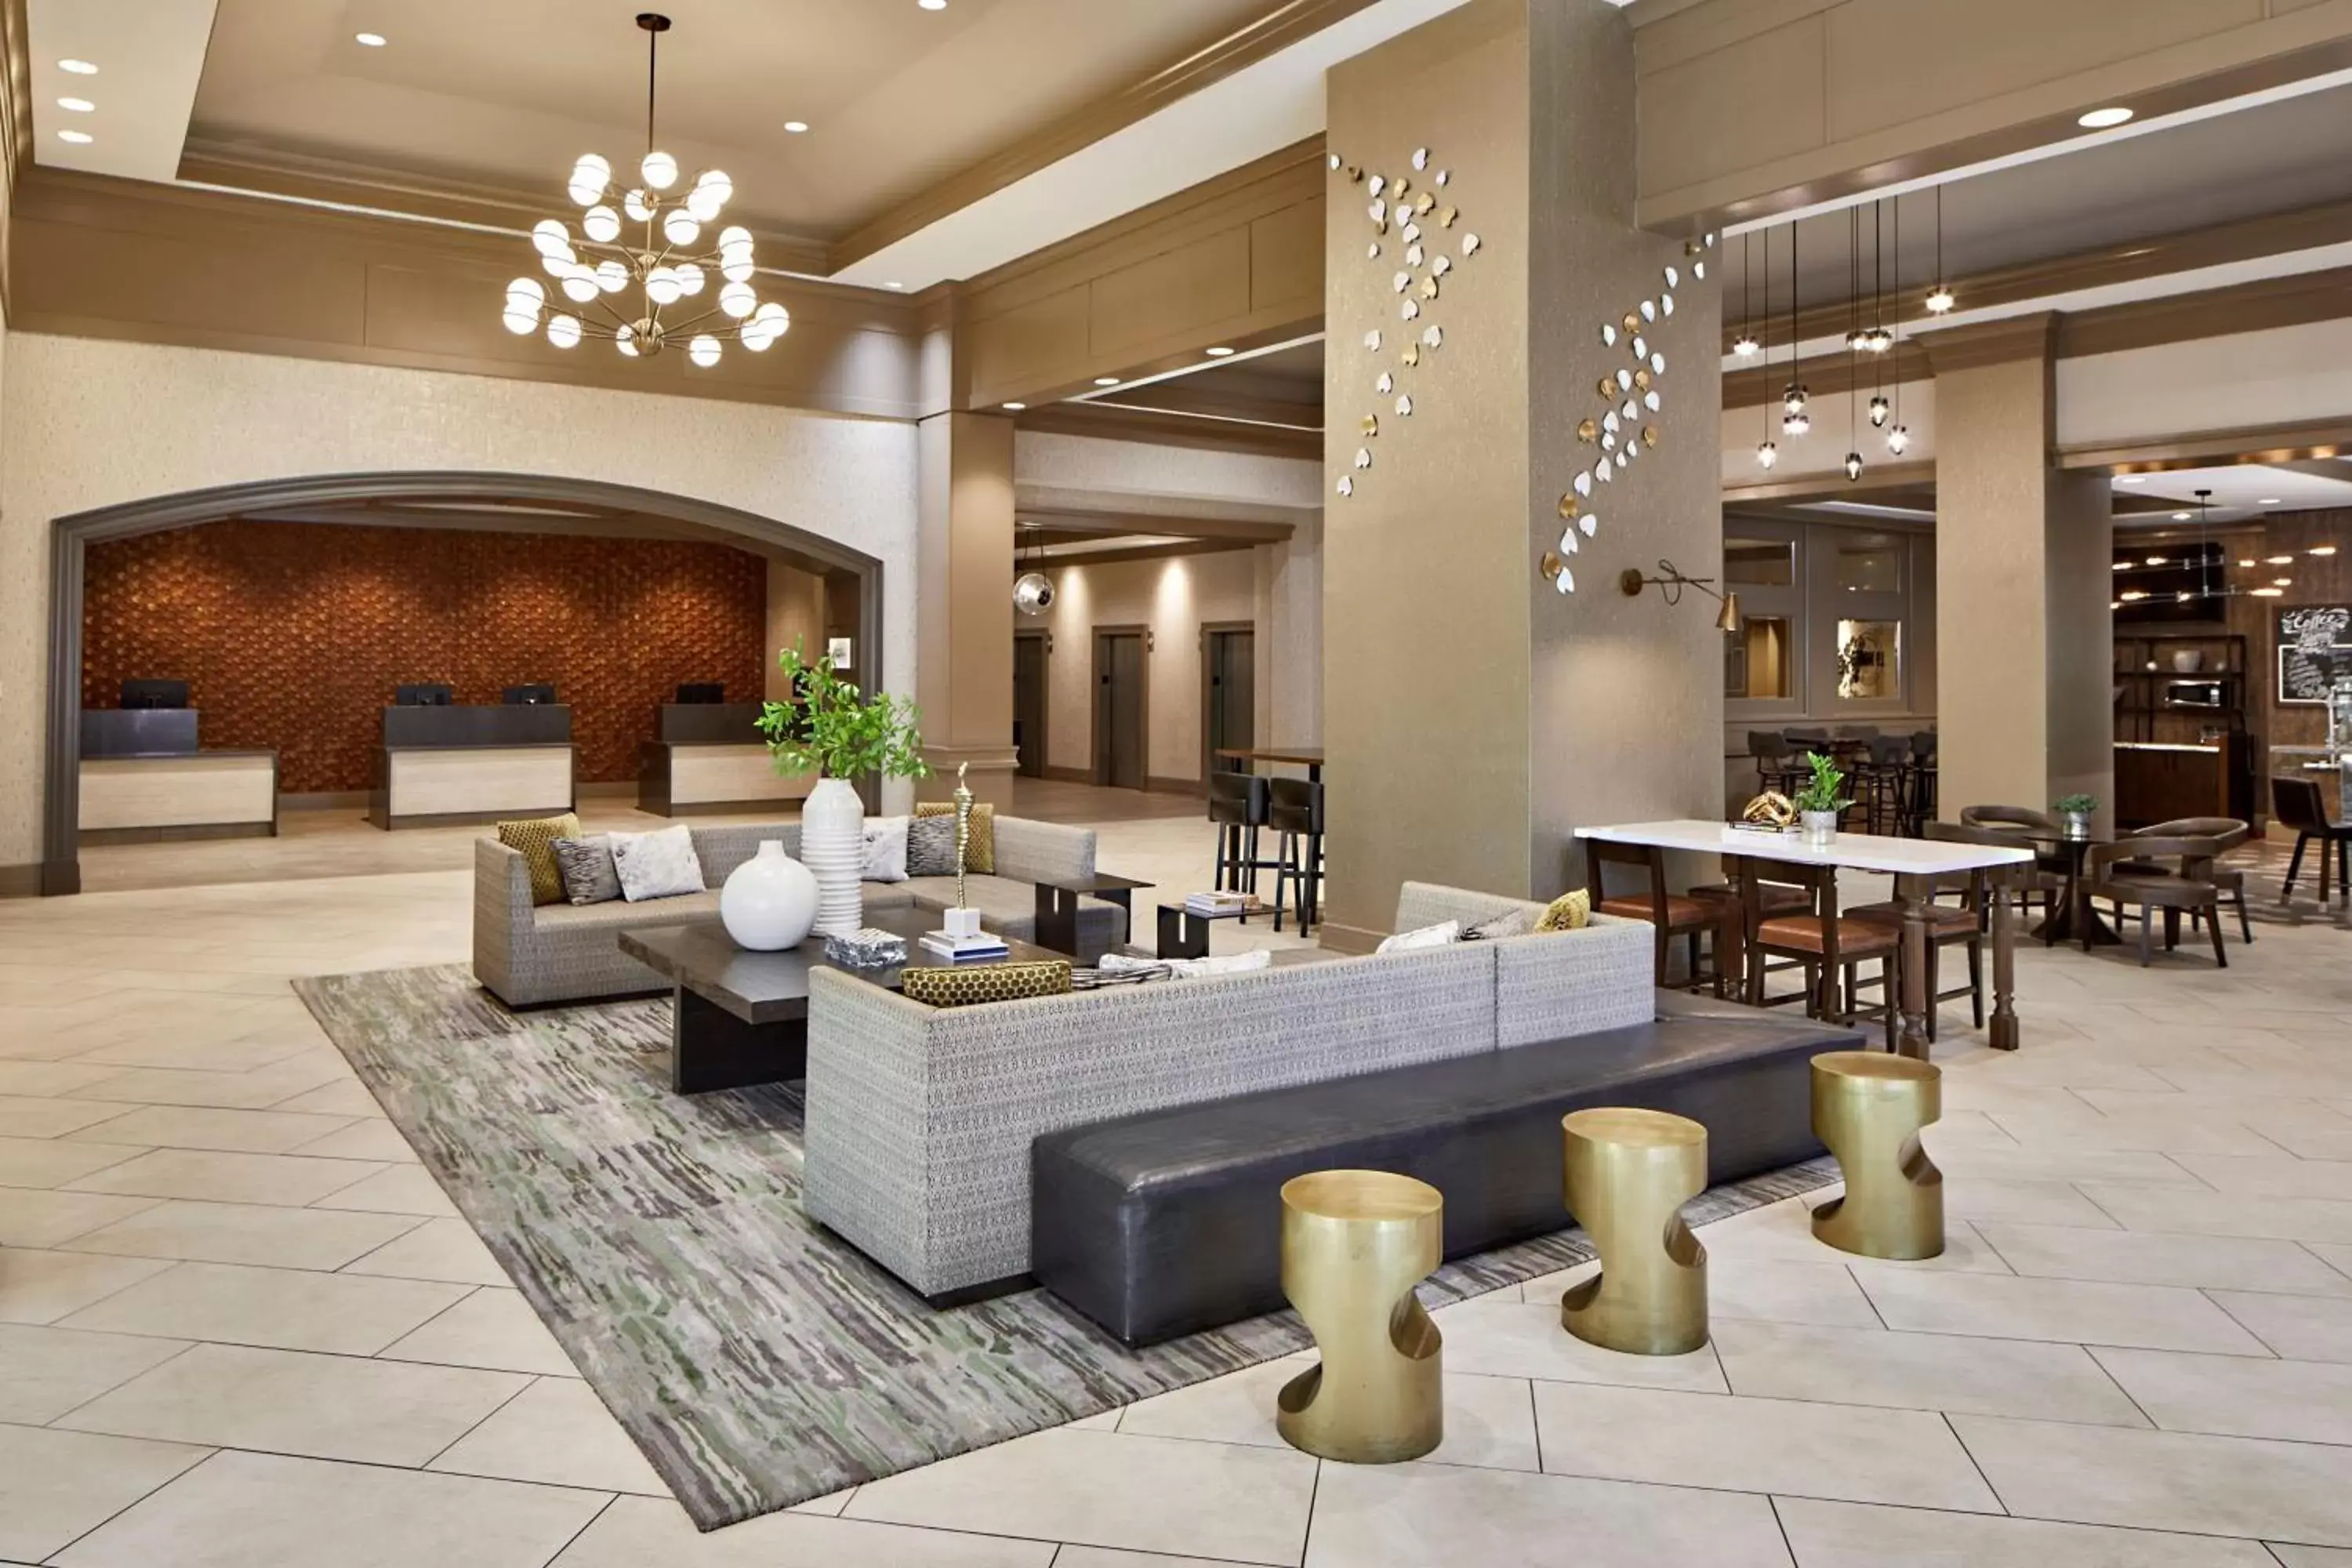 Lobby or reception in Atlanta Marriott Alpharetta